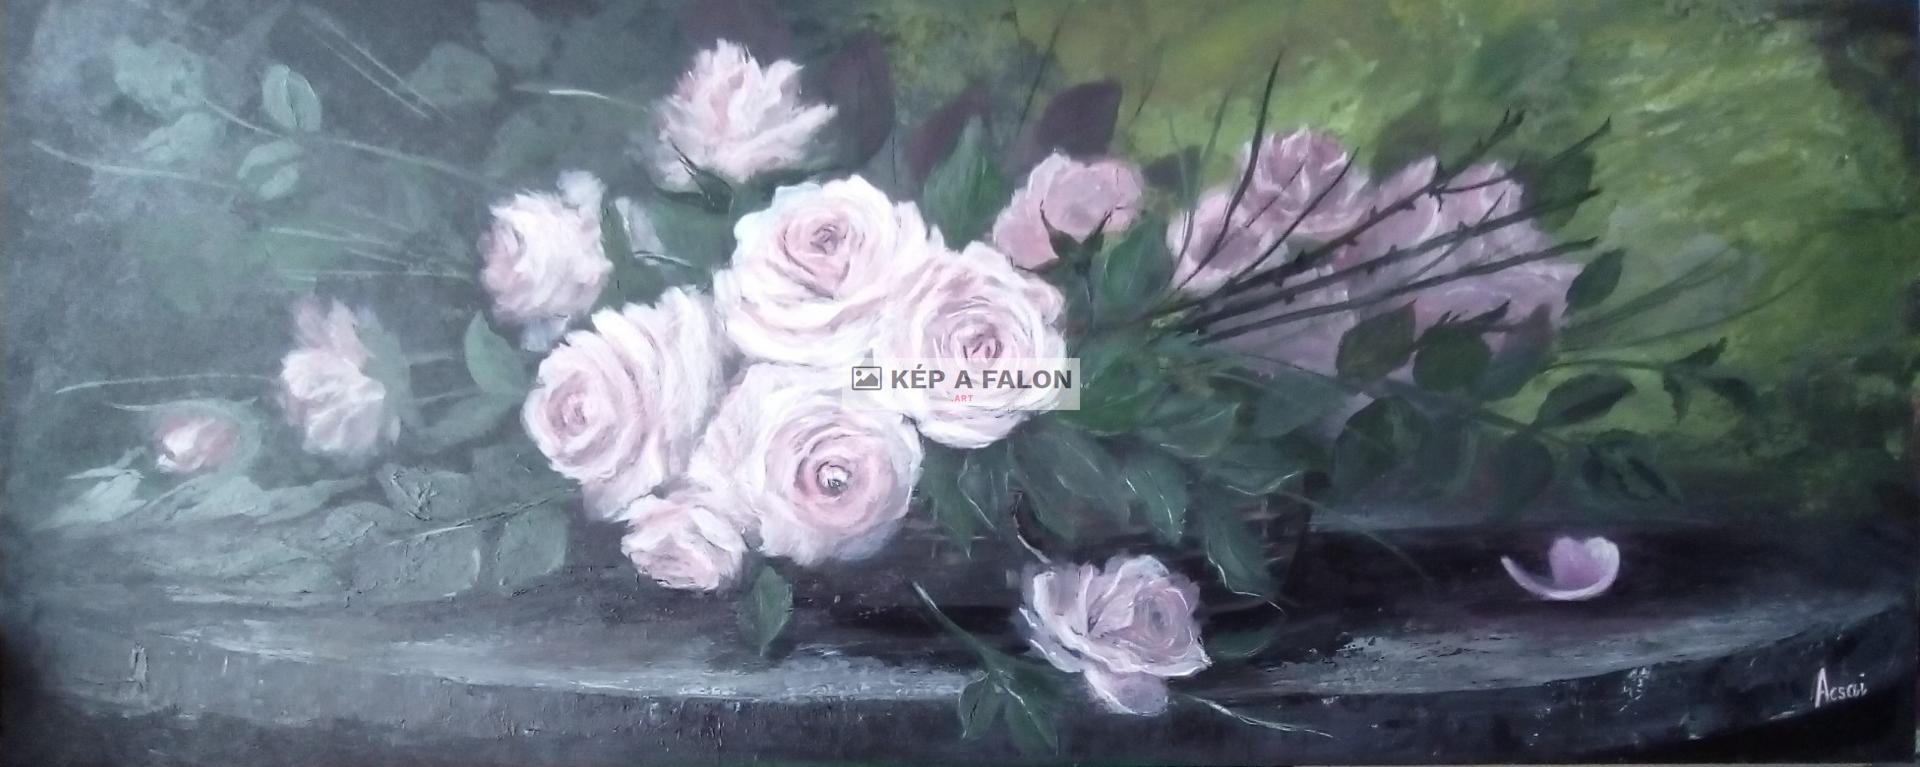 Rózsaszín rózsák a kerti asztalon by: Acsai Anna | 2018.év, akril festmény